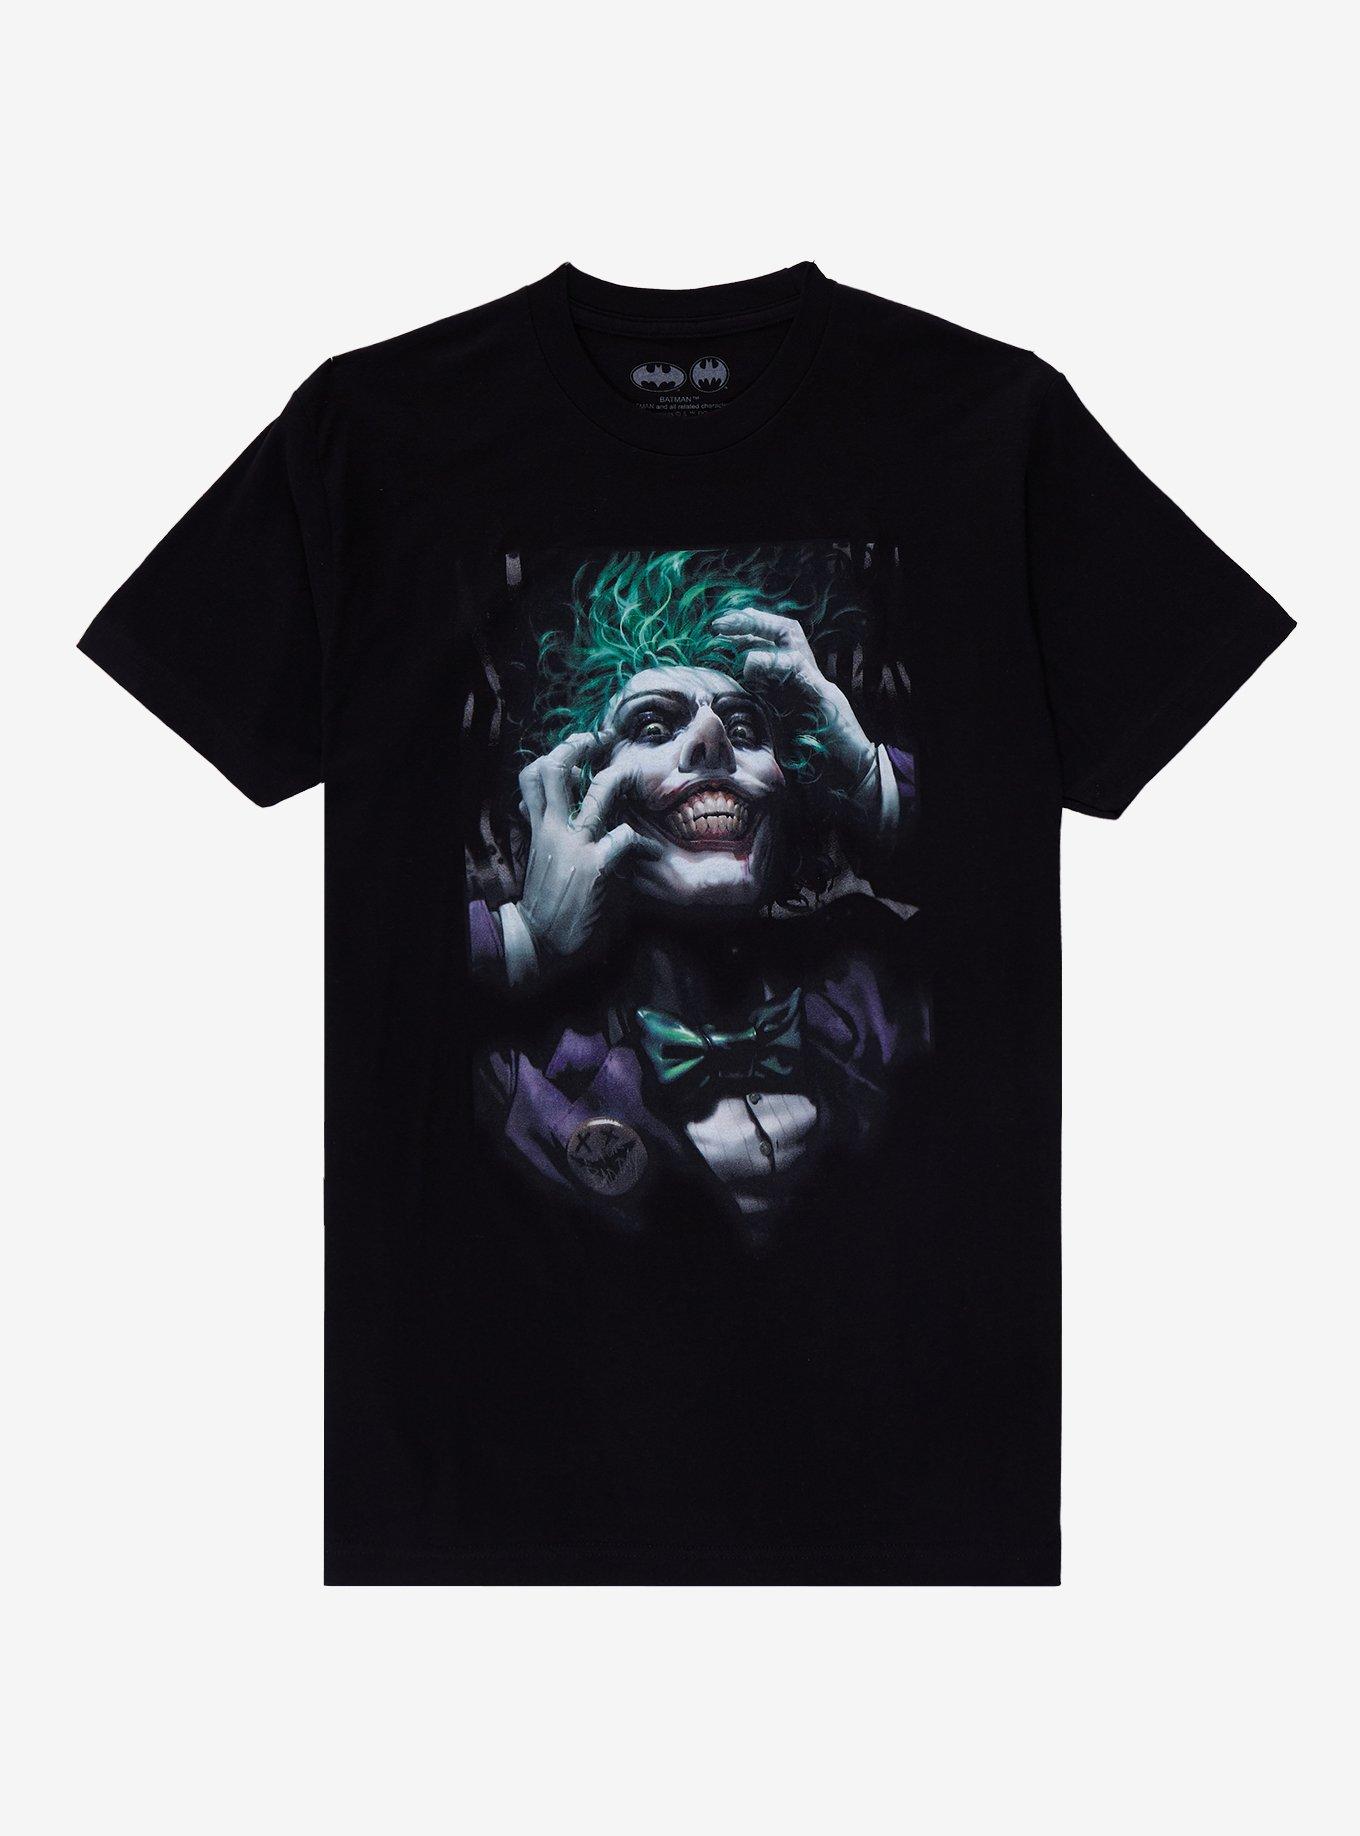 Joker Merchandise | Hot Topic